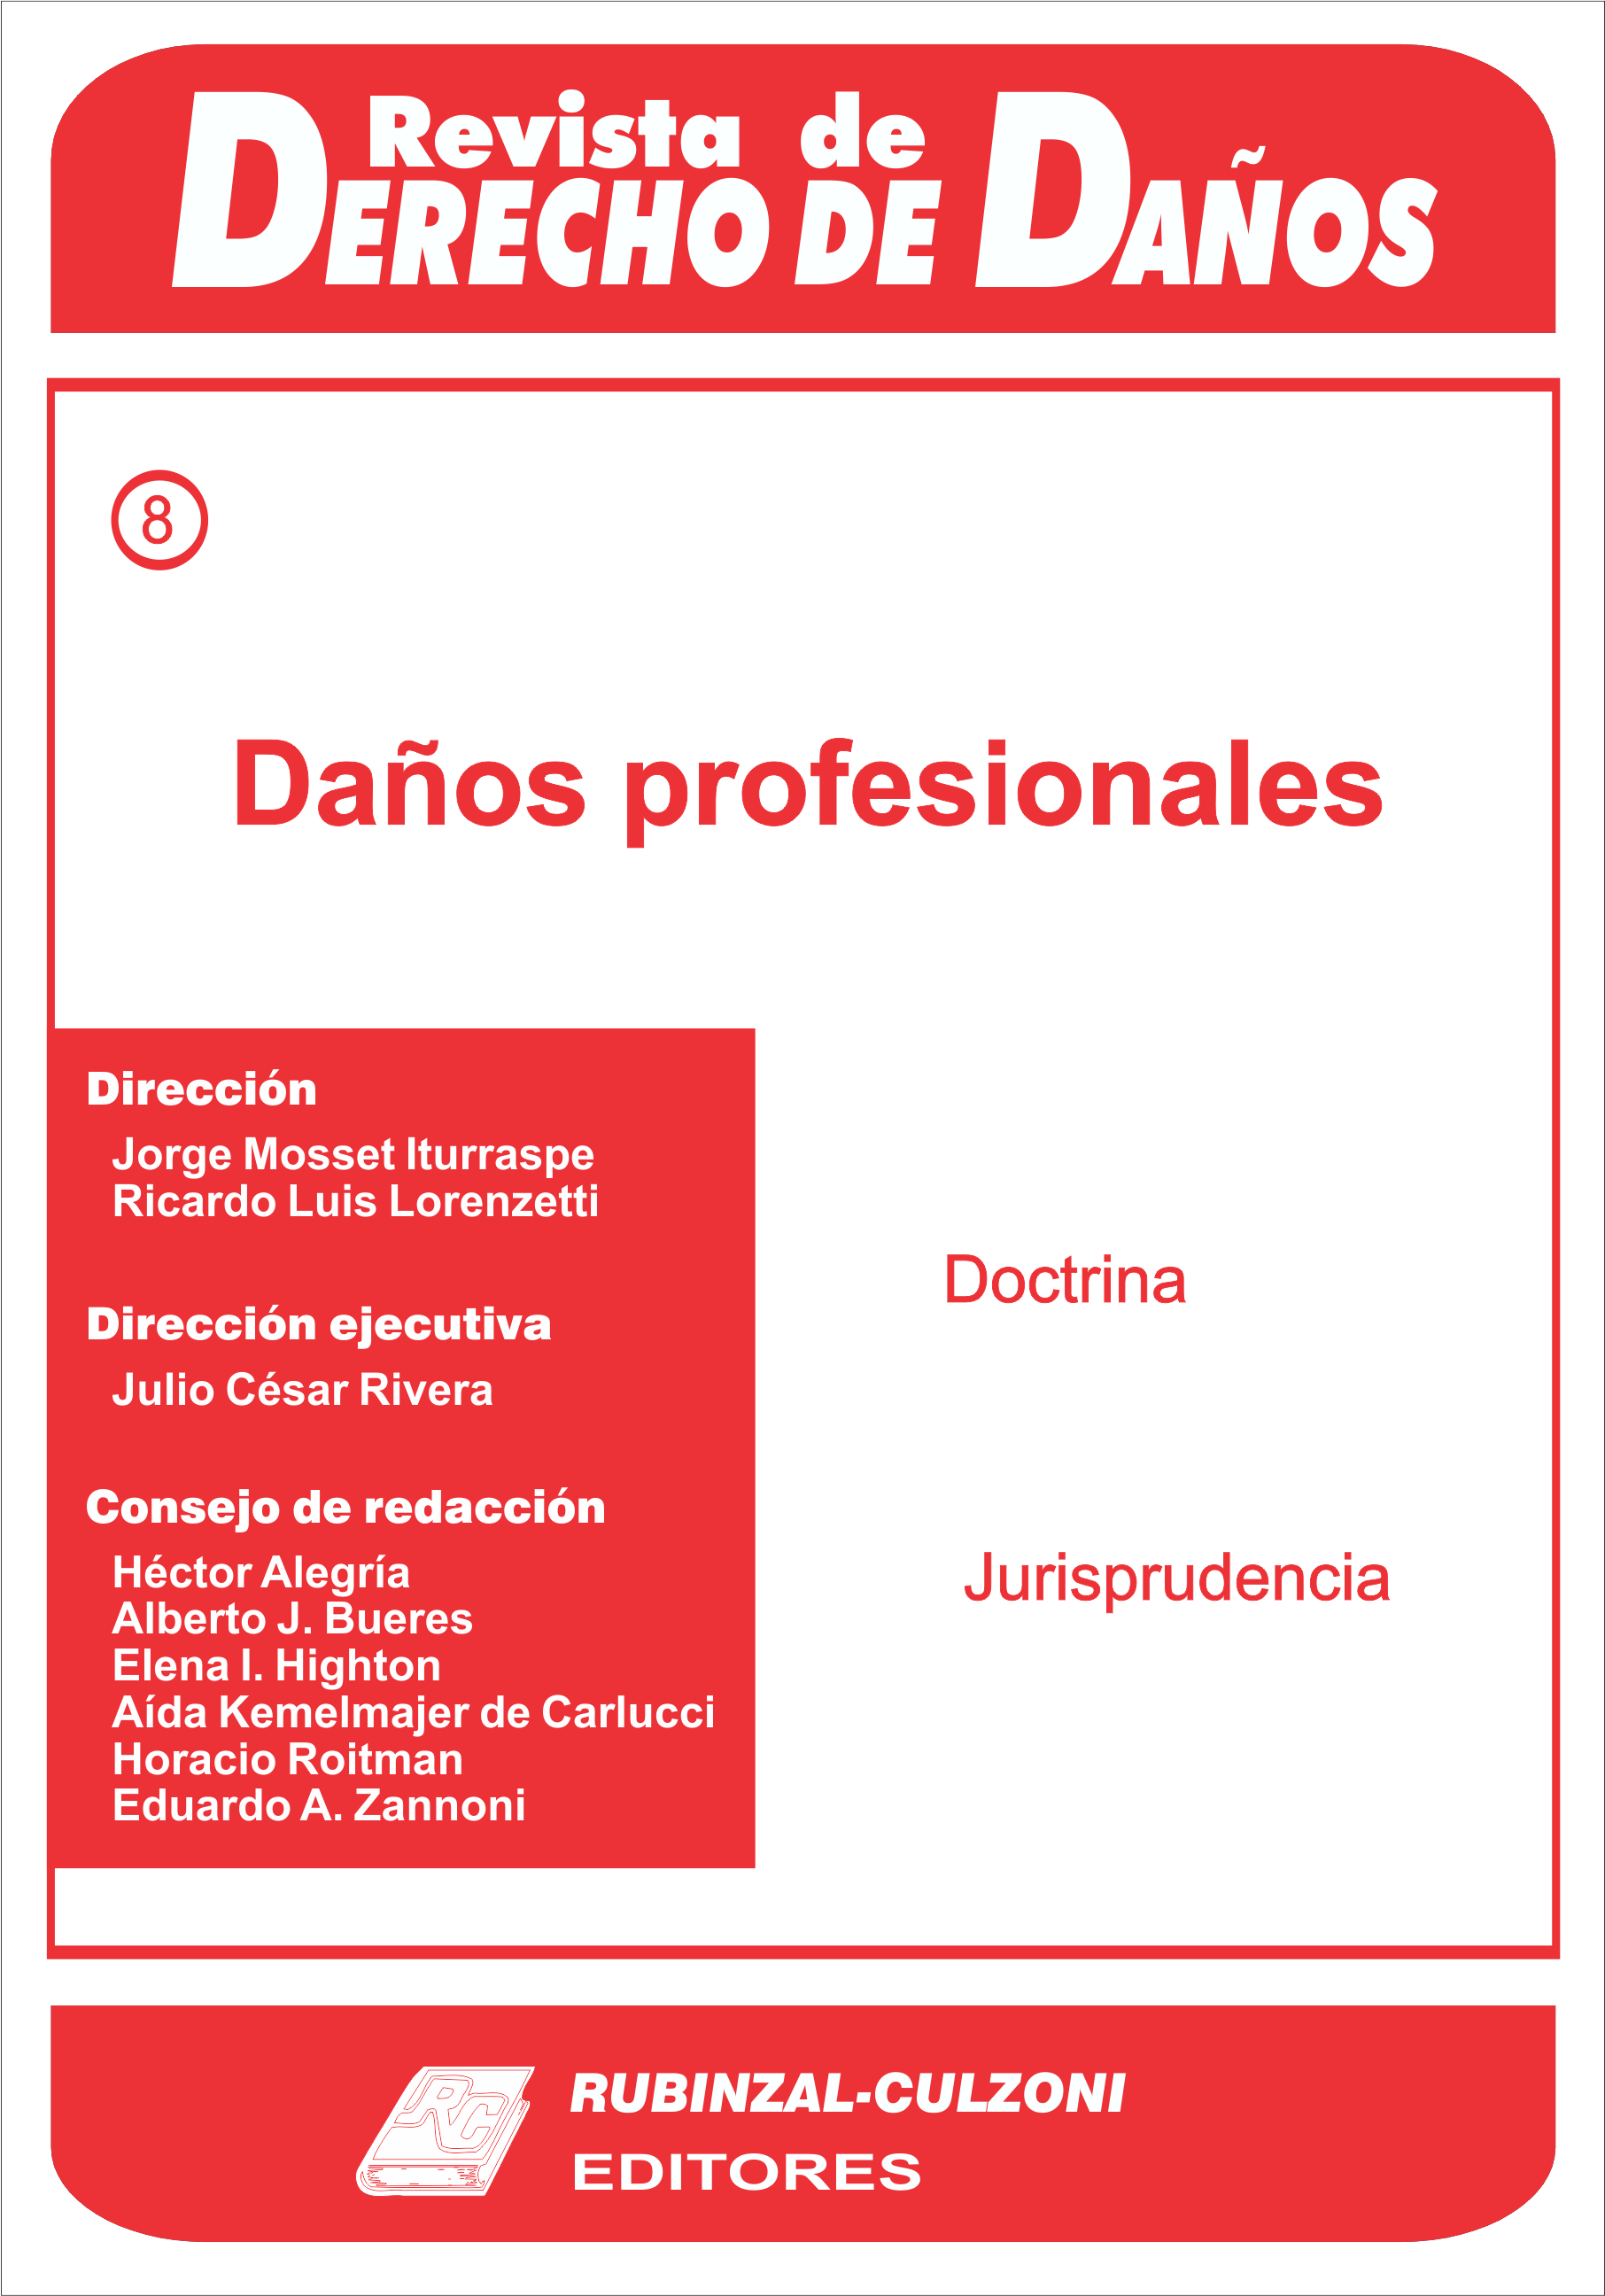 Daños profesionales. [2000-8]